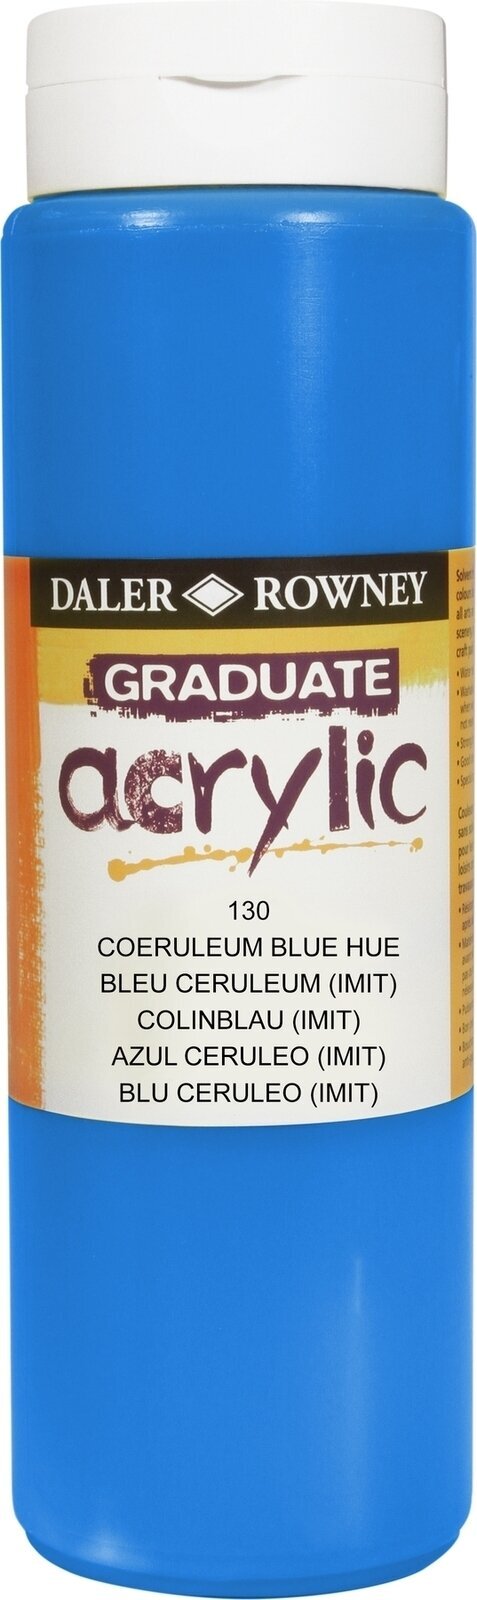 Akrilna boja Daler Rowney Graduate Akrilna boja Coeruleum Blue Hue 500 ml 1 kom